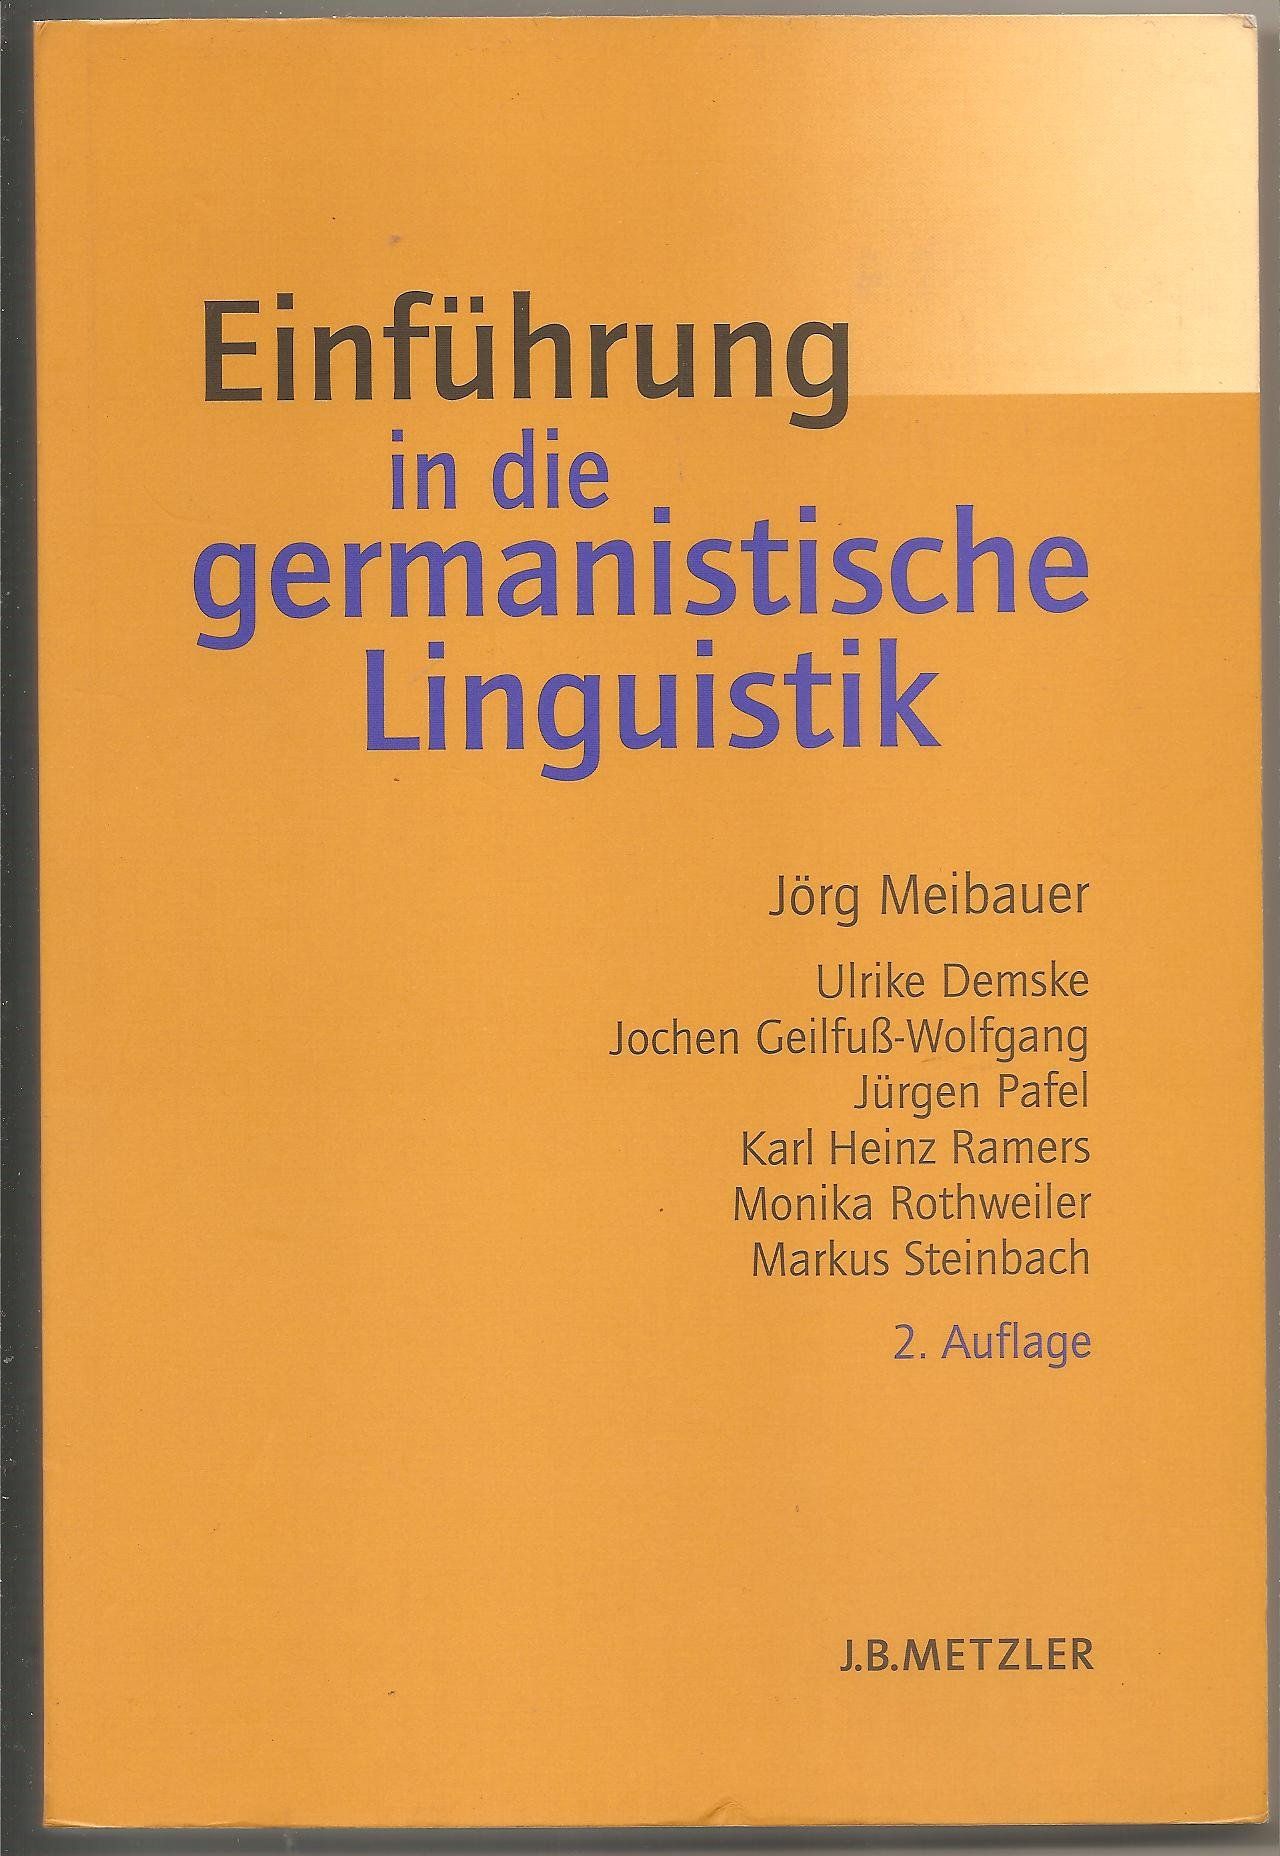 Einführung in die germanistische Linguistik (Lehrbuch) - Meibauer, Jörg, Ulrike Demske und Jochen Geilfuß-Wolfgang